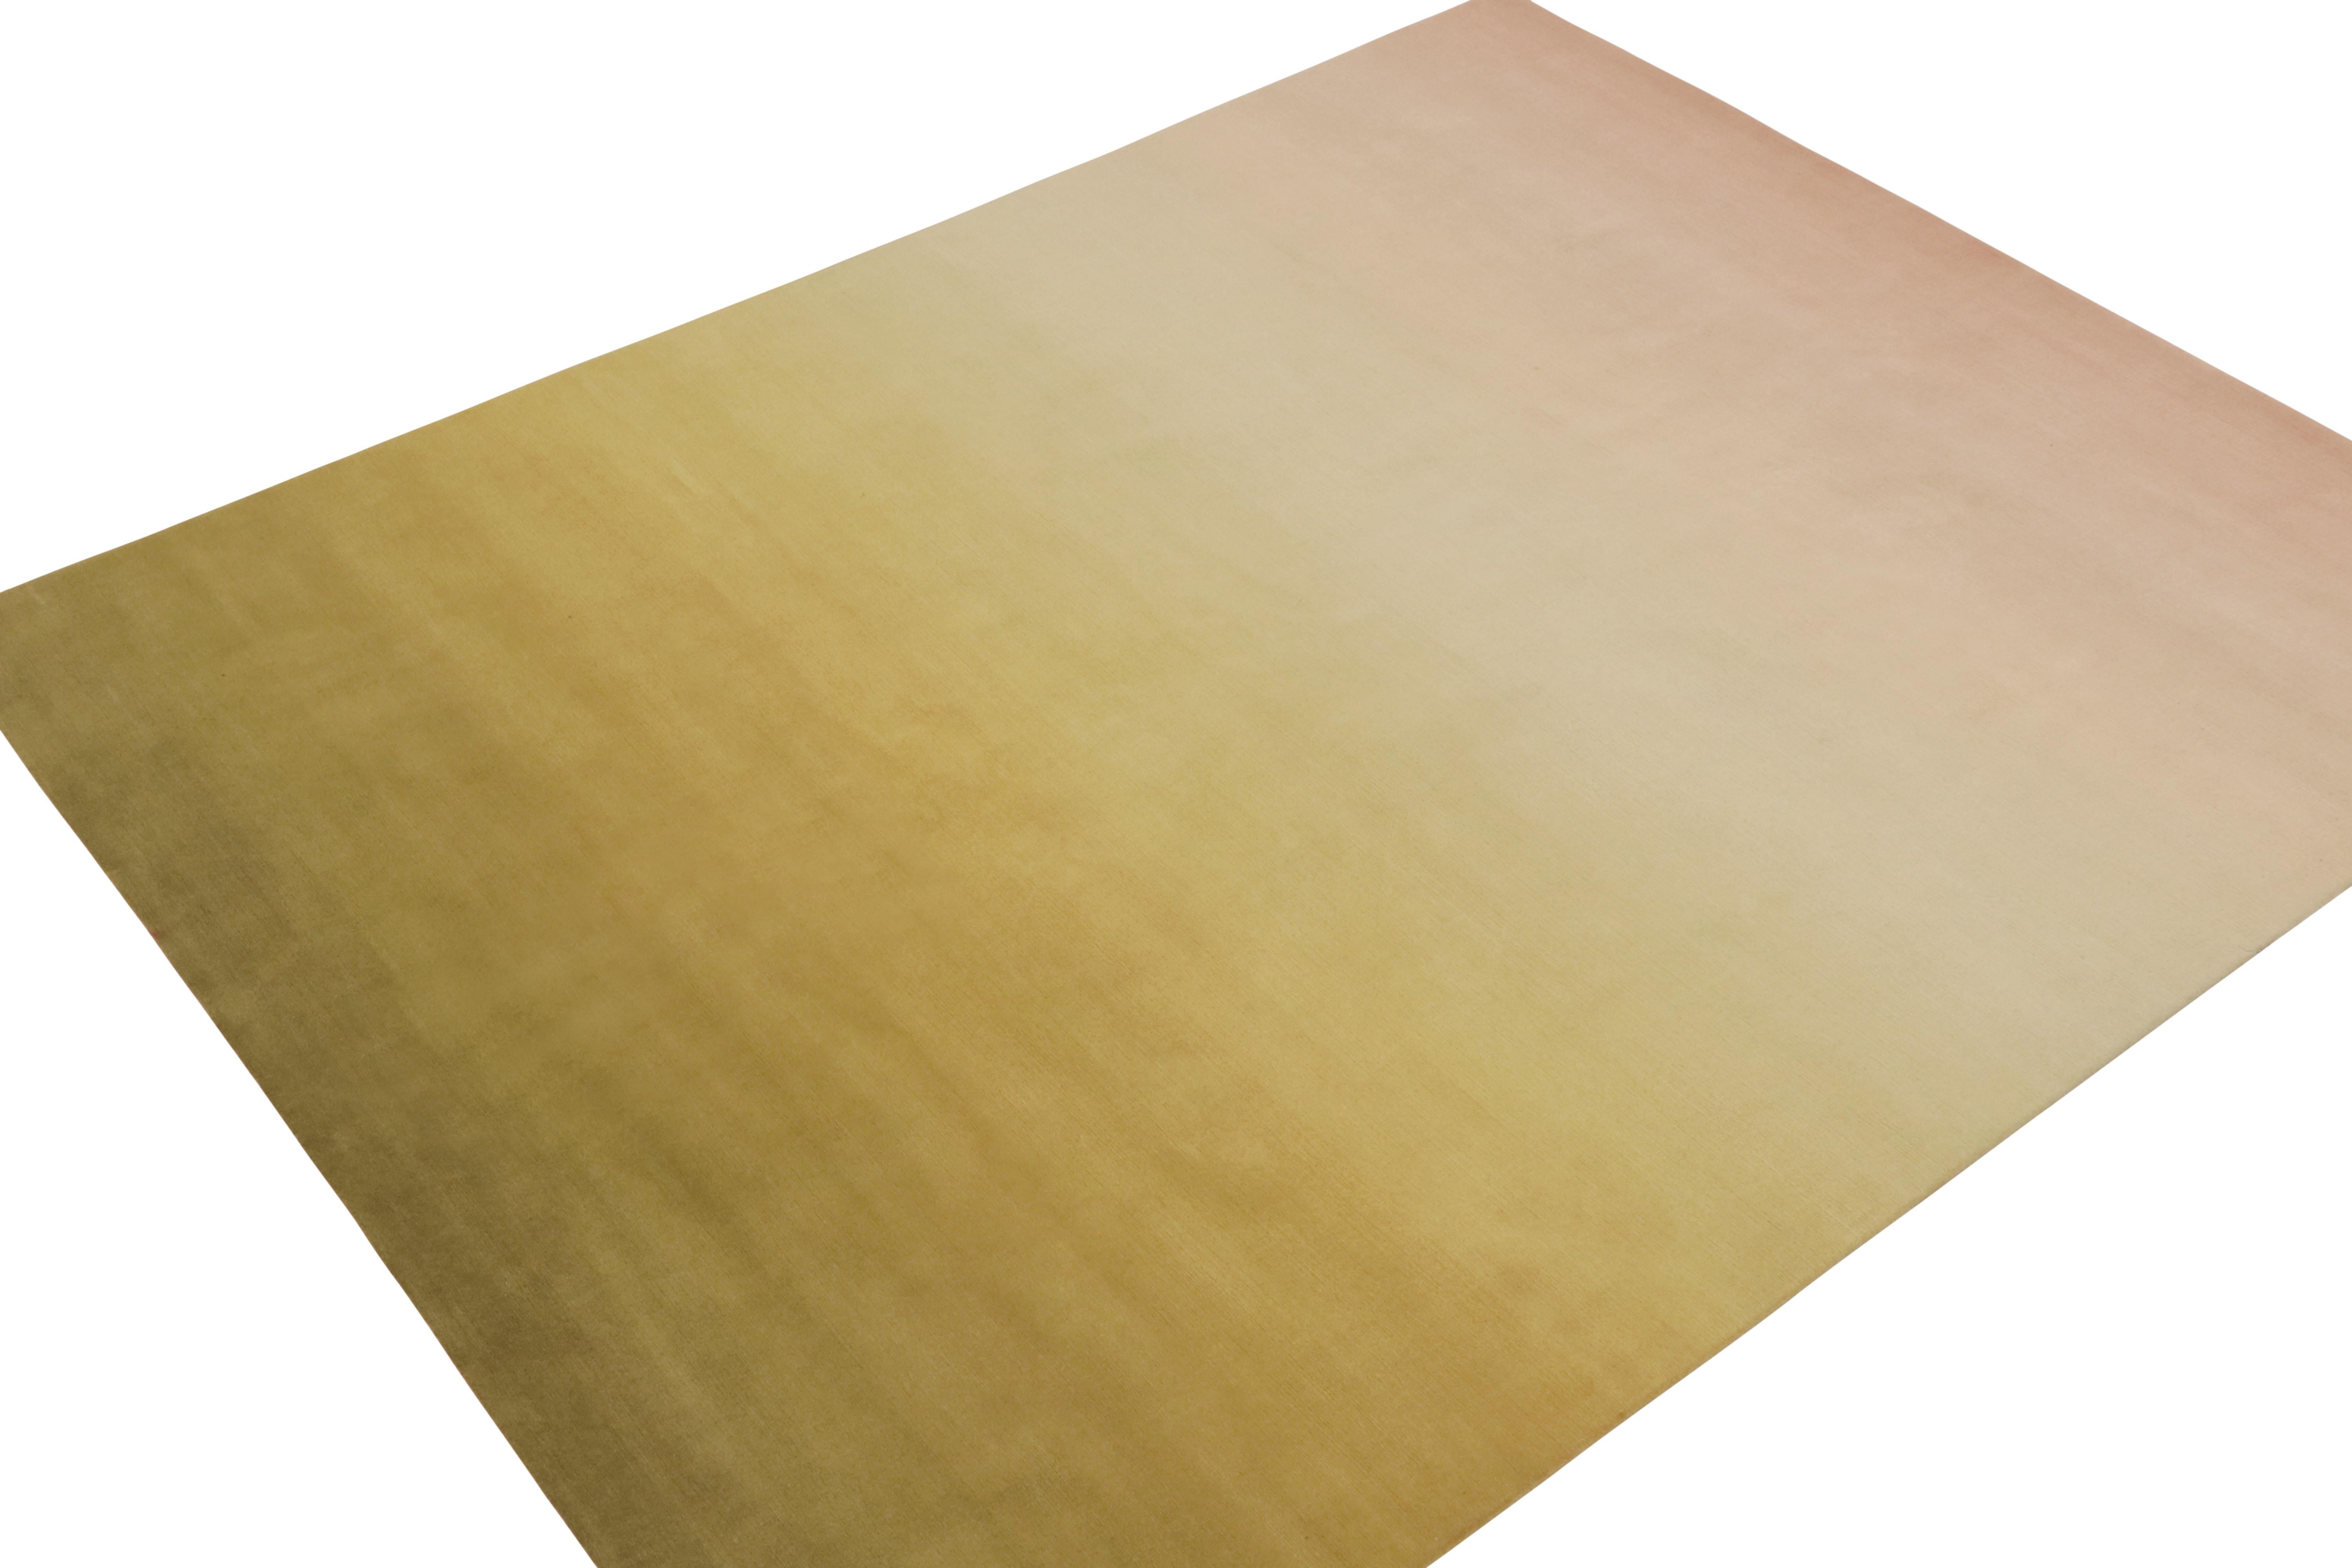 Rug & Kilim präsentiert einen 8x10 großen modernen Teppich in einem warmen Ombre-Design mit unifarbenen Farbverläufen in Chartreuse- und Rosatönen. Handgeknüpft aus Wolle und Seide, liegt die Kunst darin, wie subtil die Farbverschiebungen im Feld